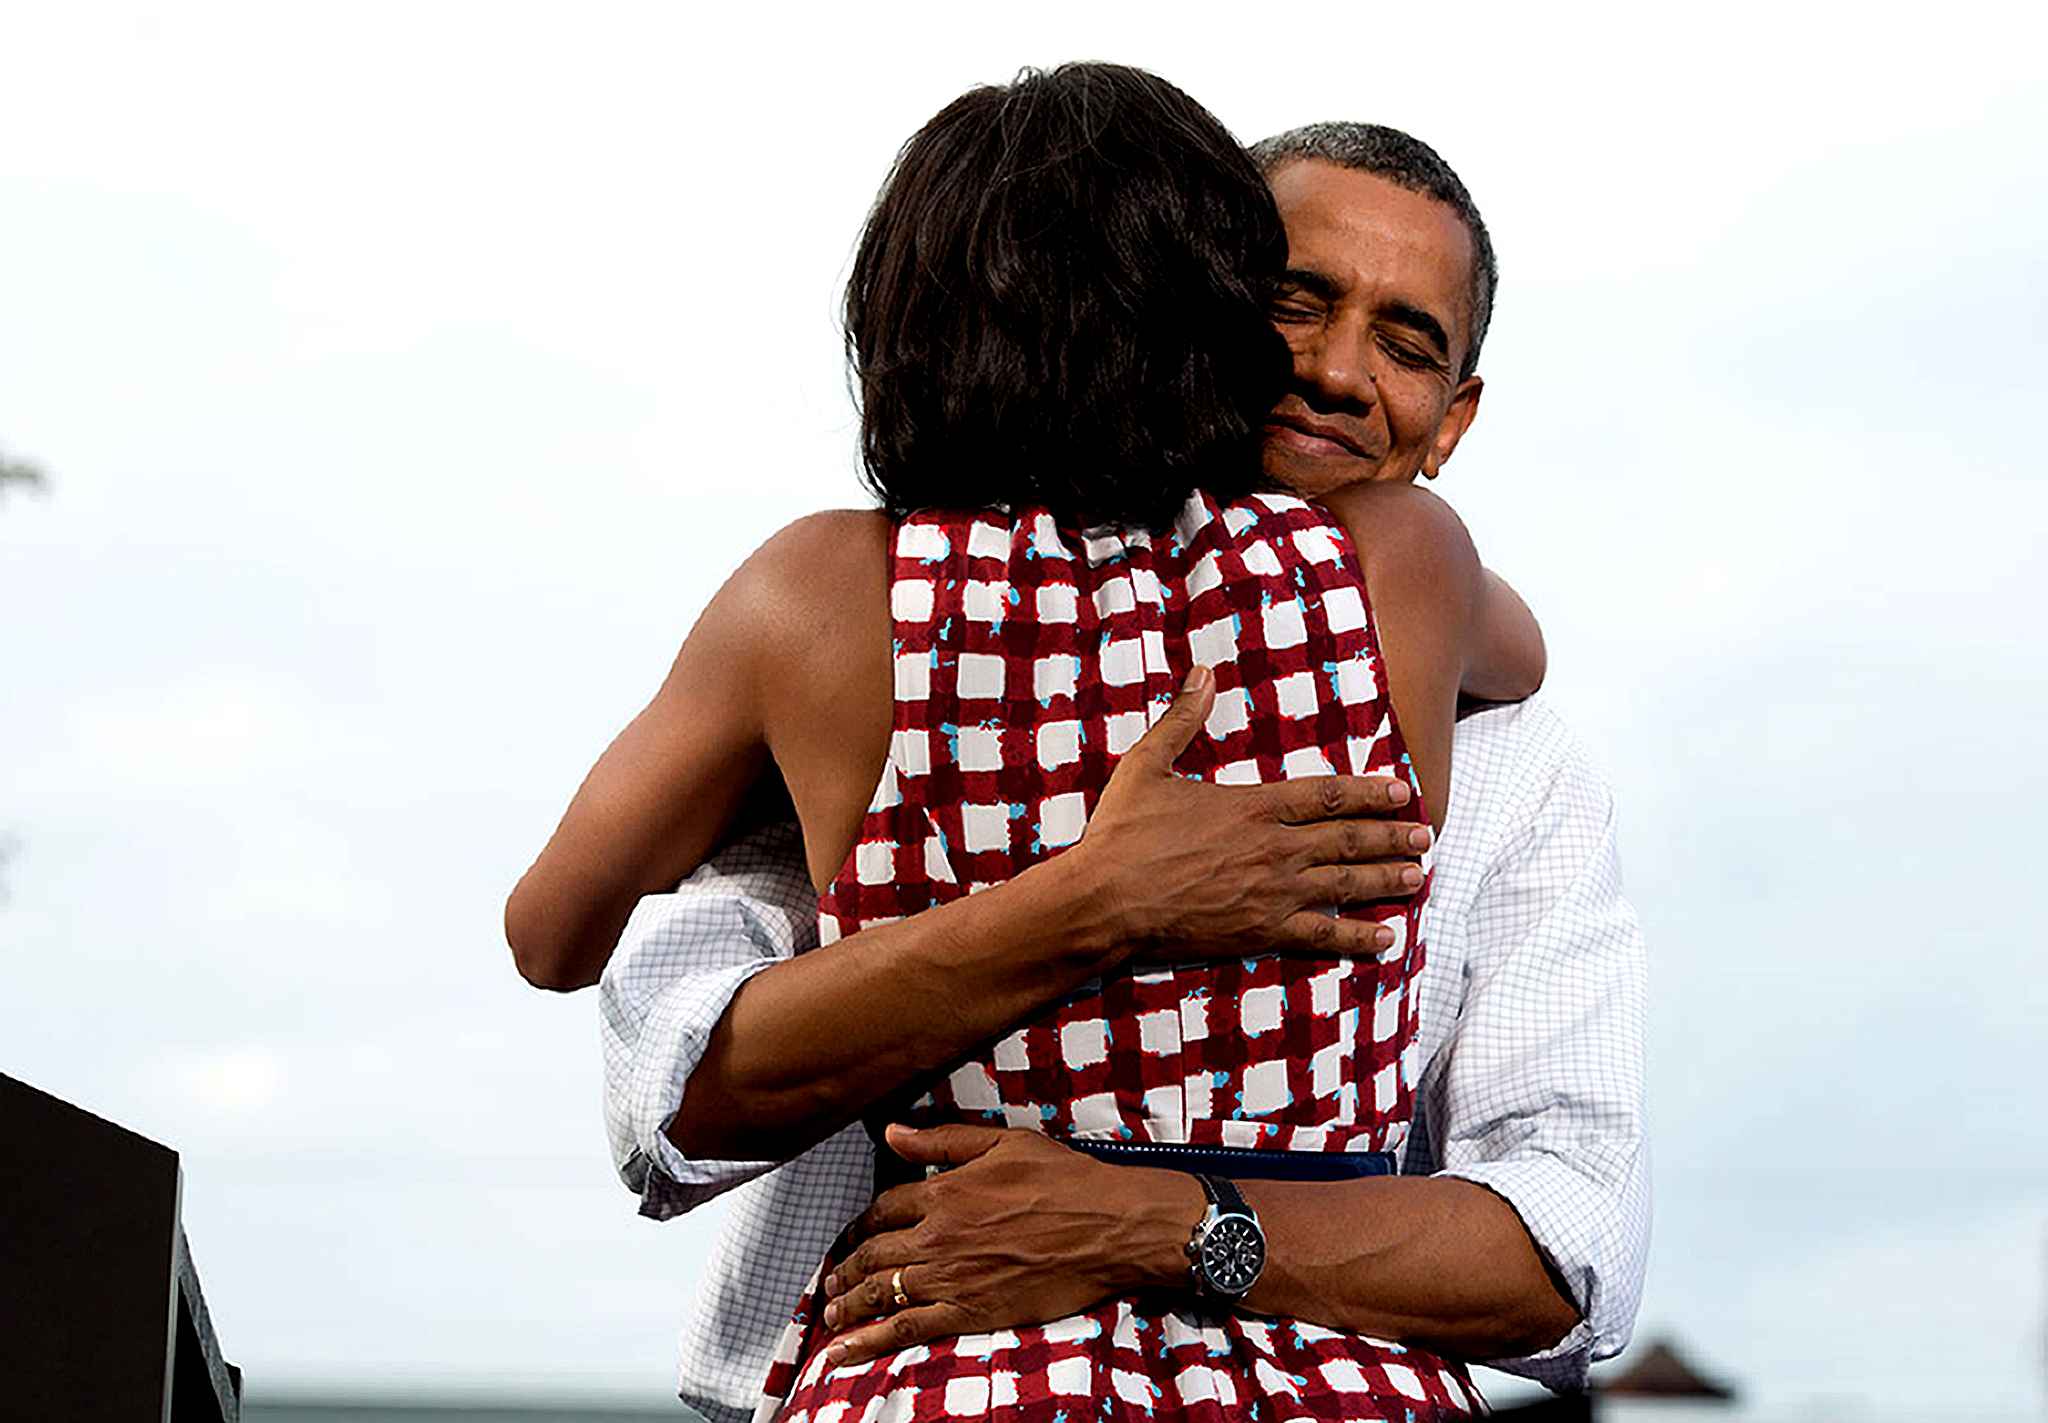 โอบามาสวมกอดสุภาพสตรีหมายเลข 1 ระหว่างการปราศรัยหาเสียงในเมืองดาเวนพอร์ต รัฐไอโอวา ที่กลายเป็นภาพที่ถูกรีทวีตมากที่สุดตลอดกาล / Official White House Photo by Pete Souza